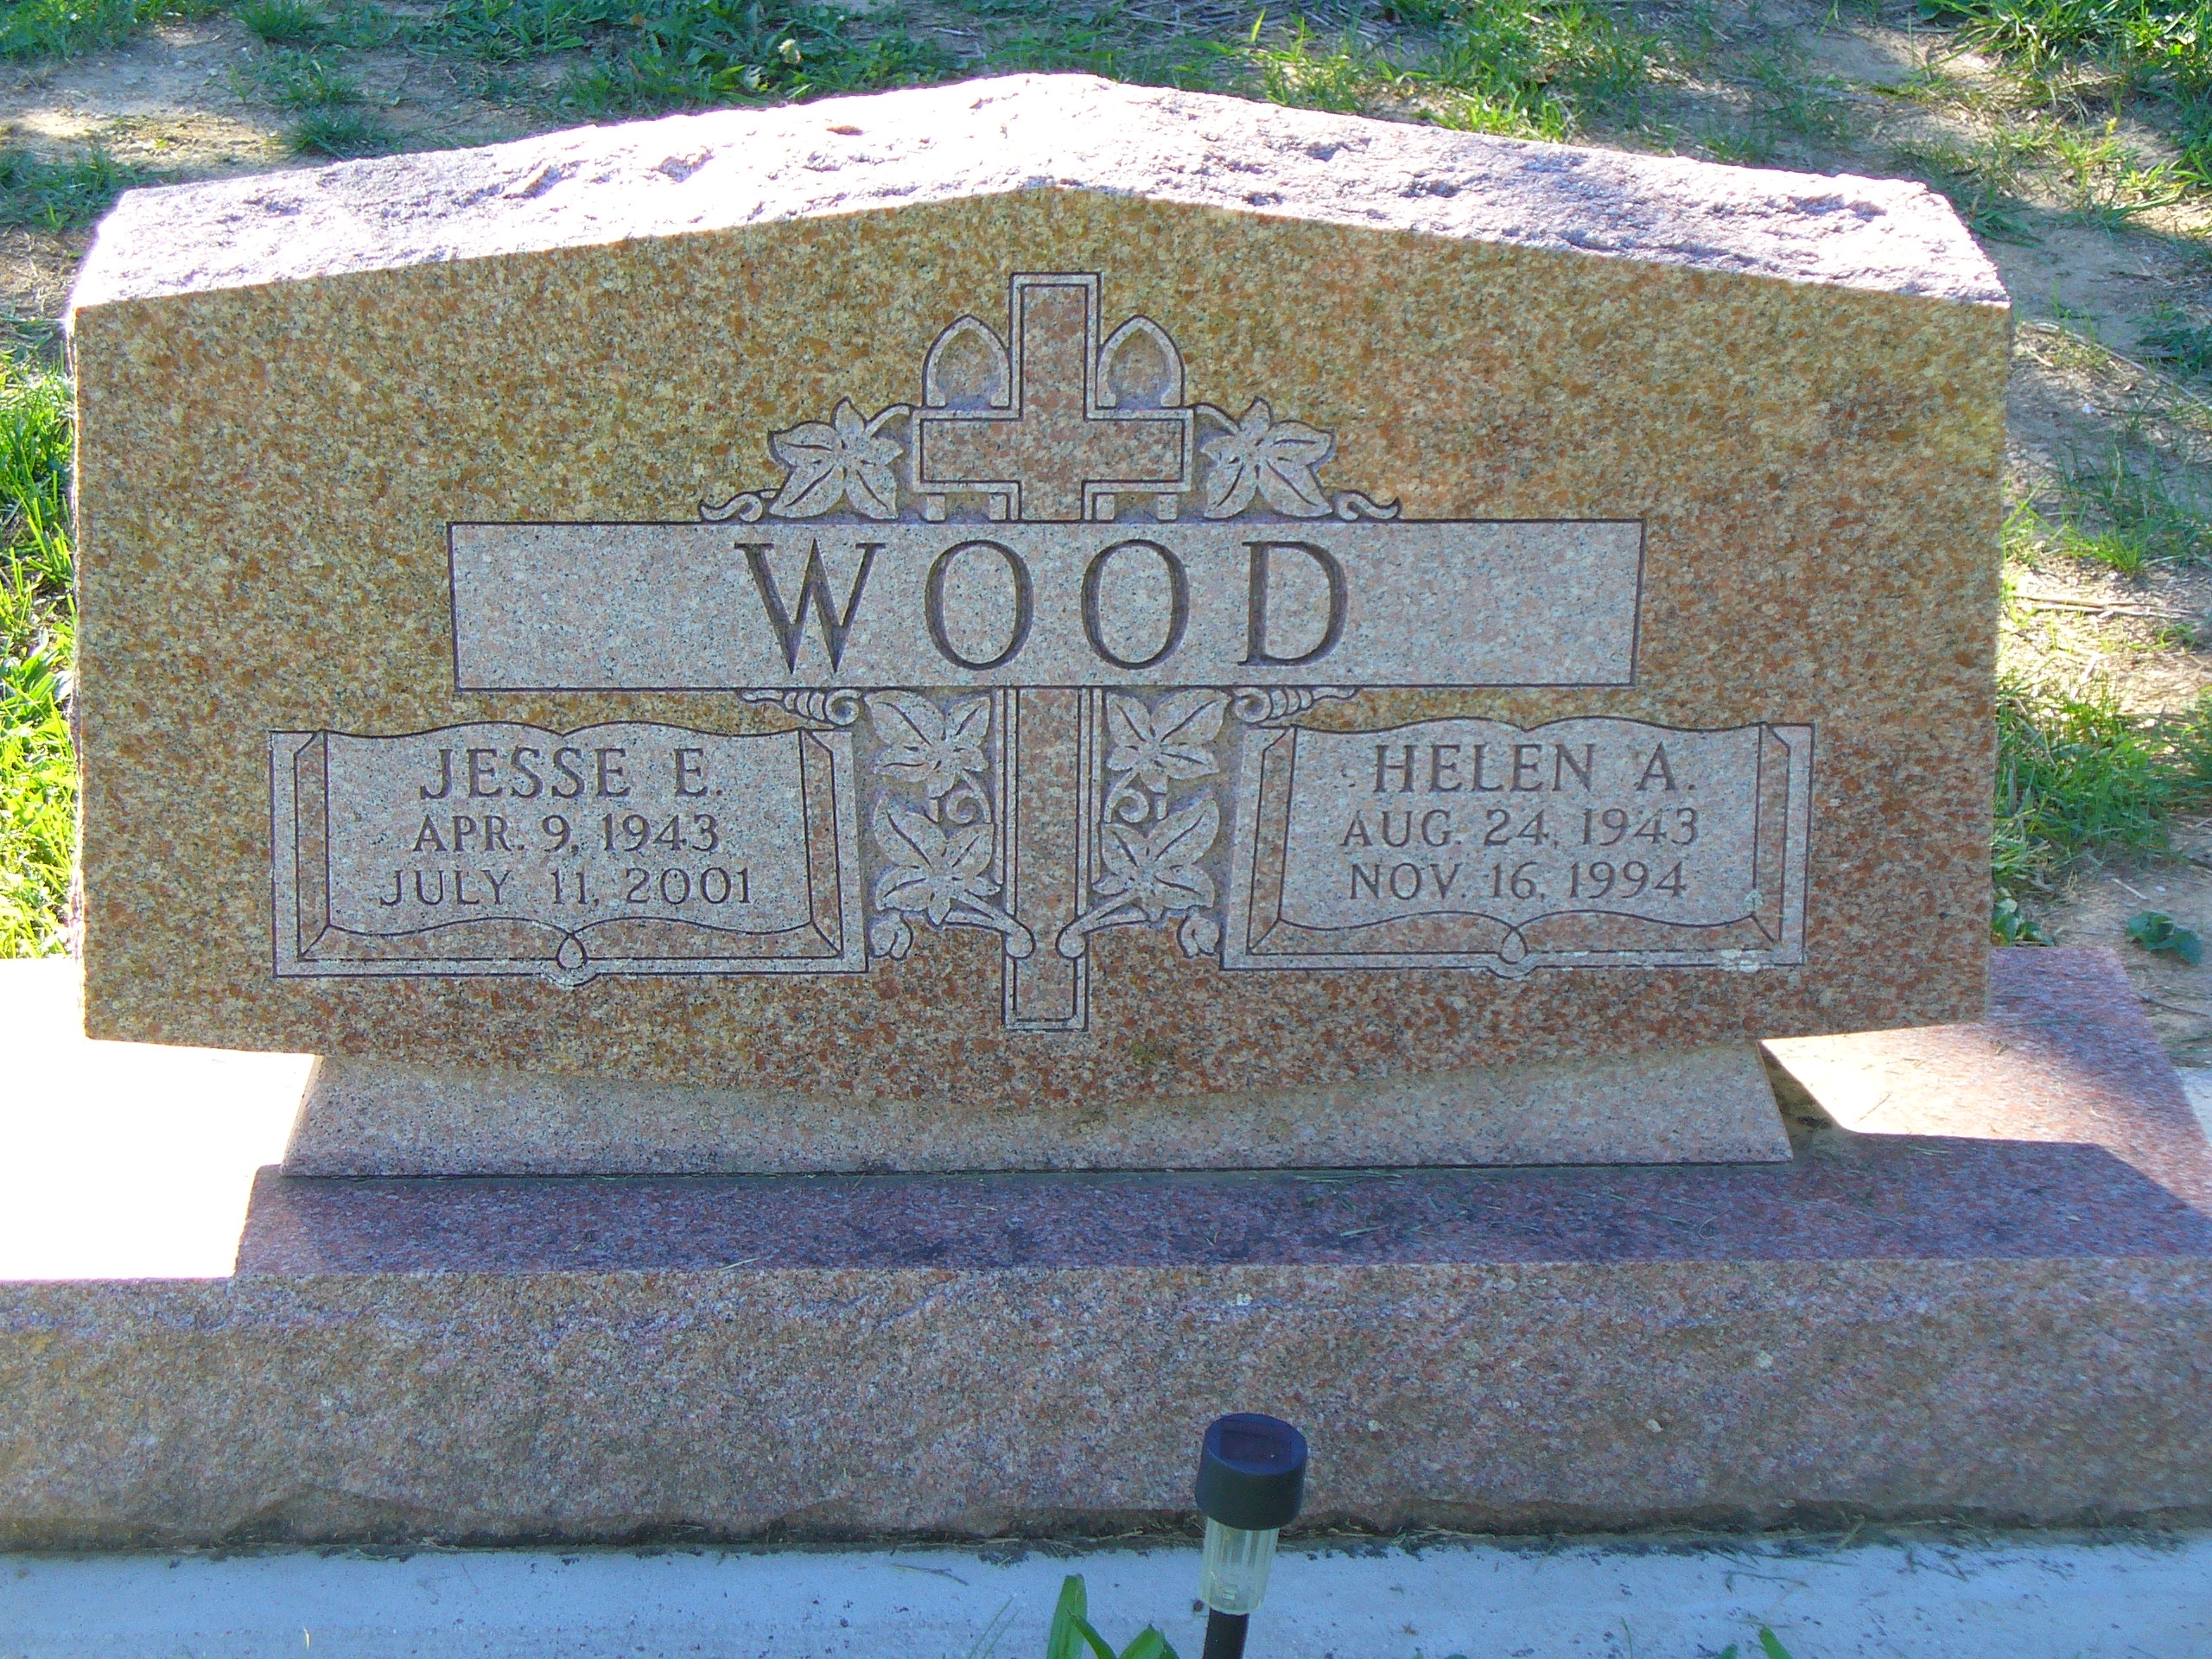 Helen A & Jesse E. Wood gravesite